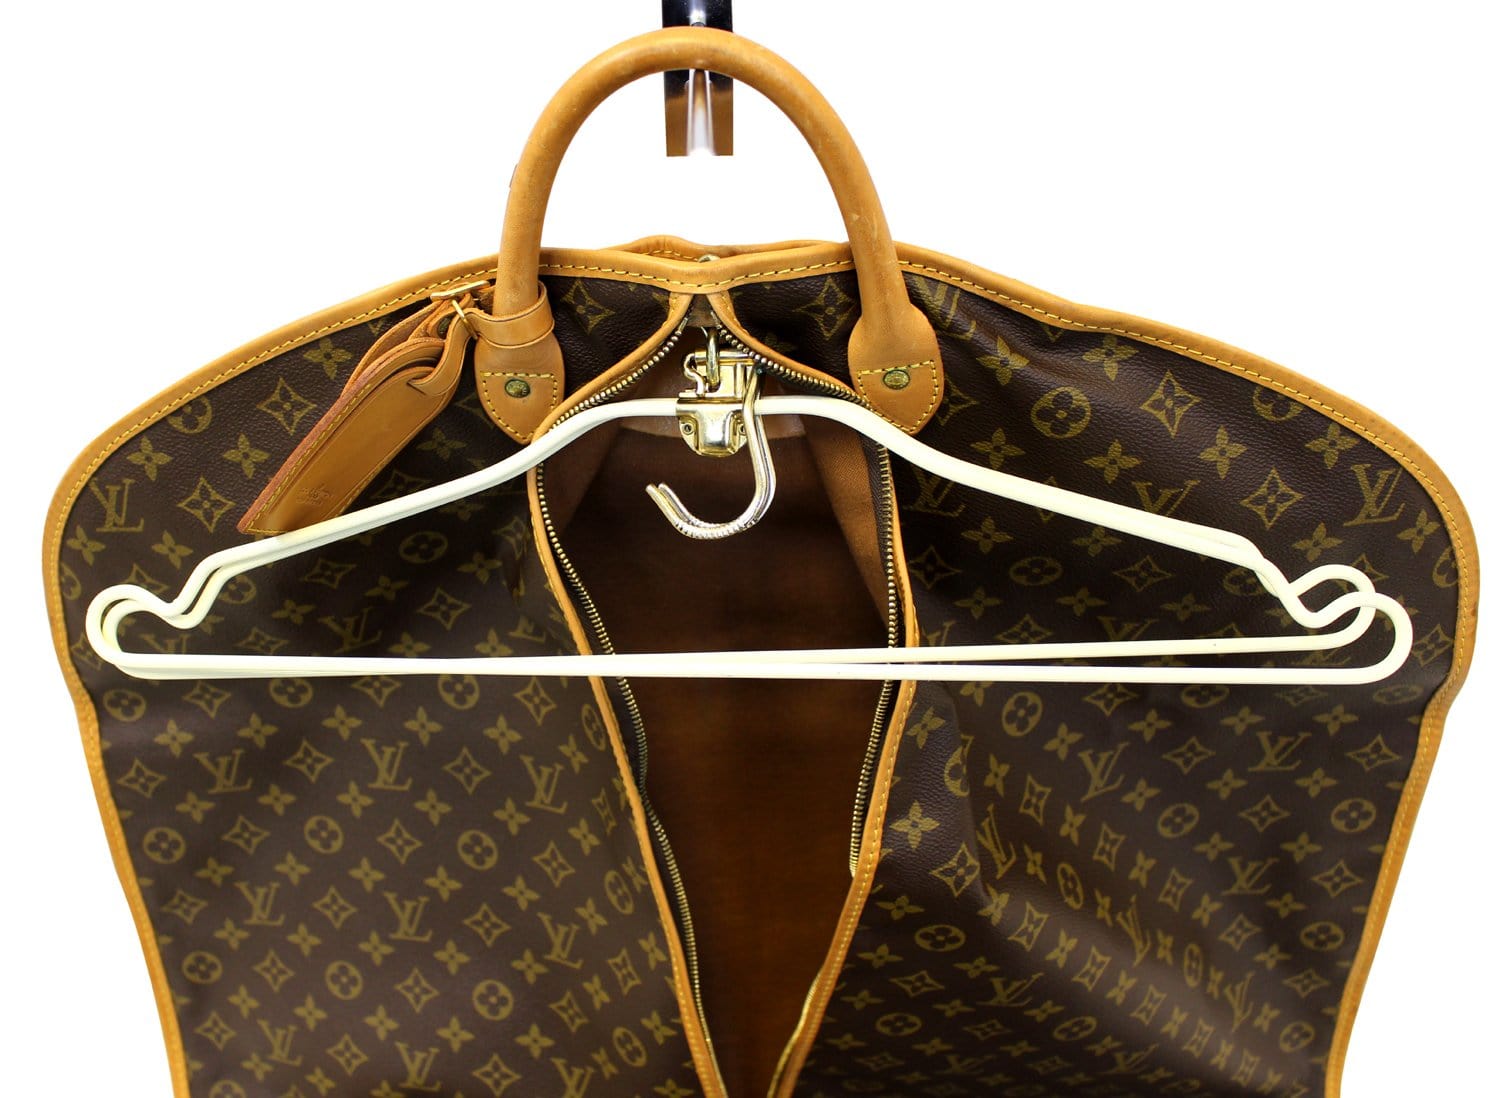 Sold at Auction: Louis Vuitton, Louis Vuitton garment cover